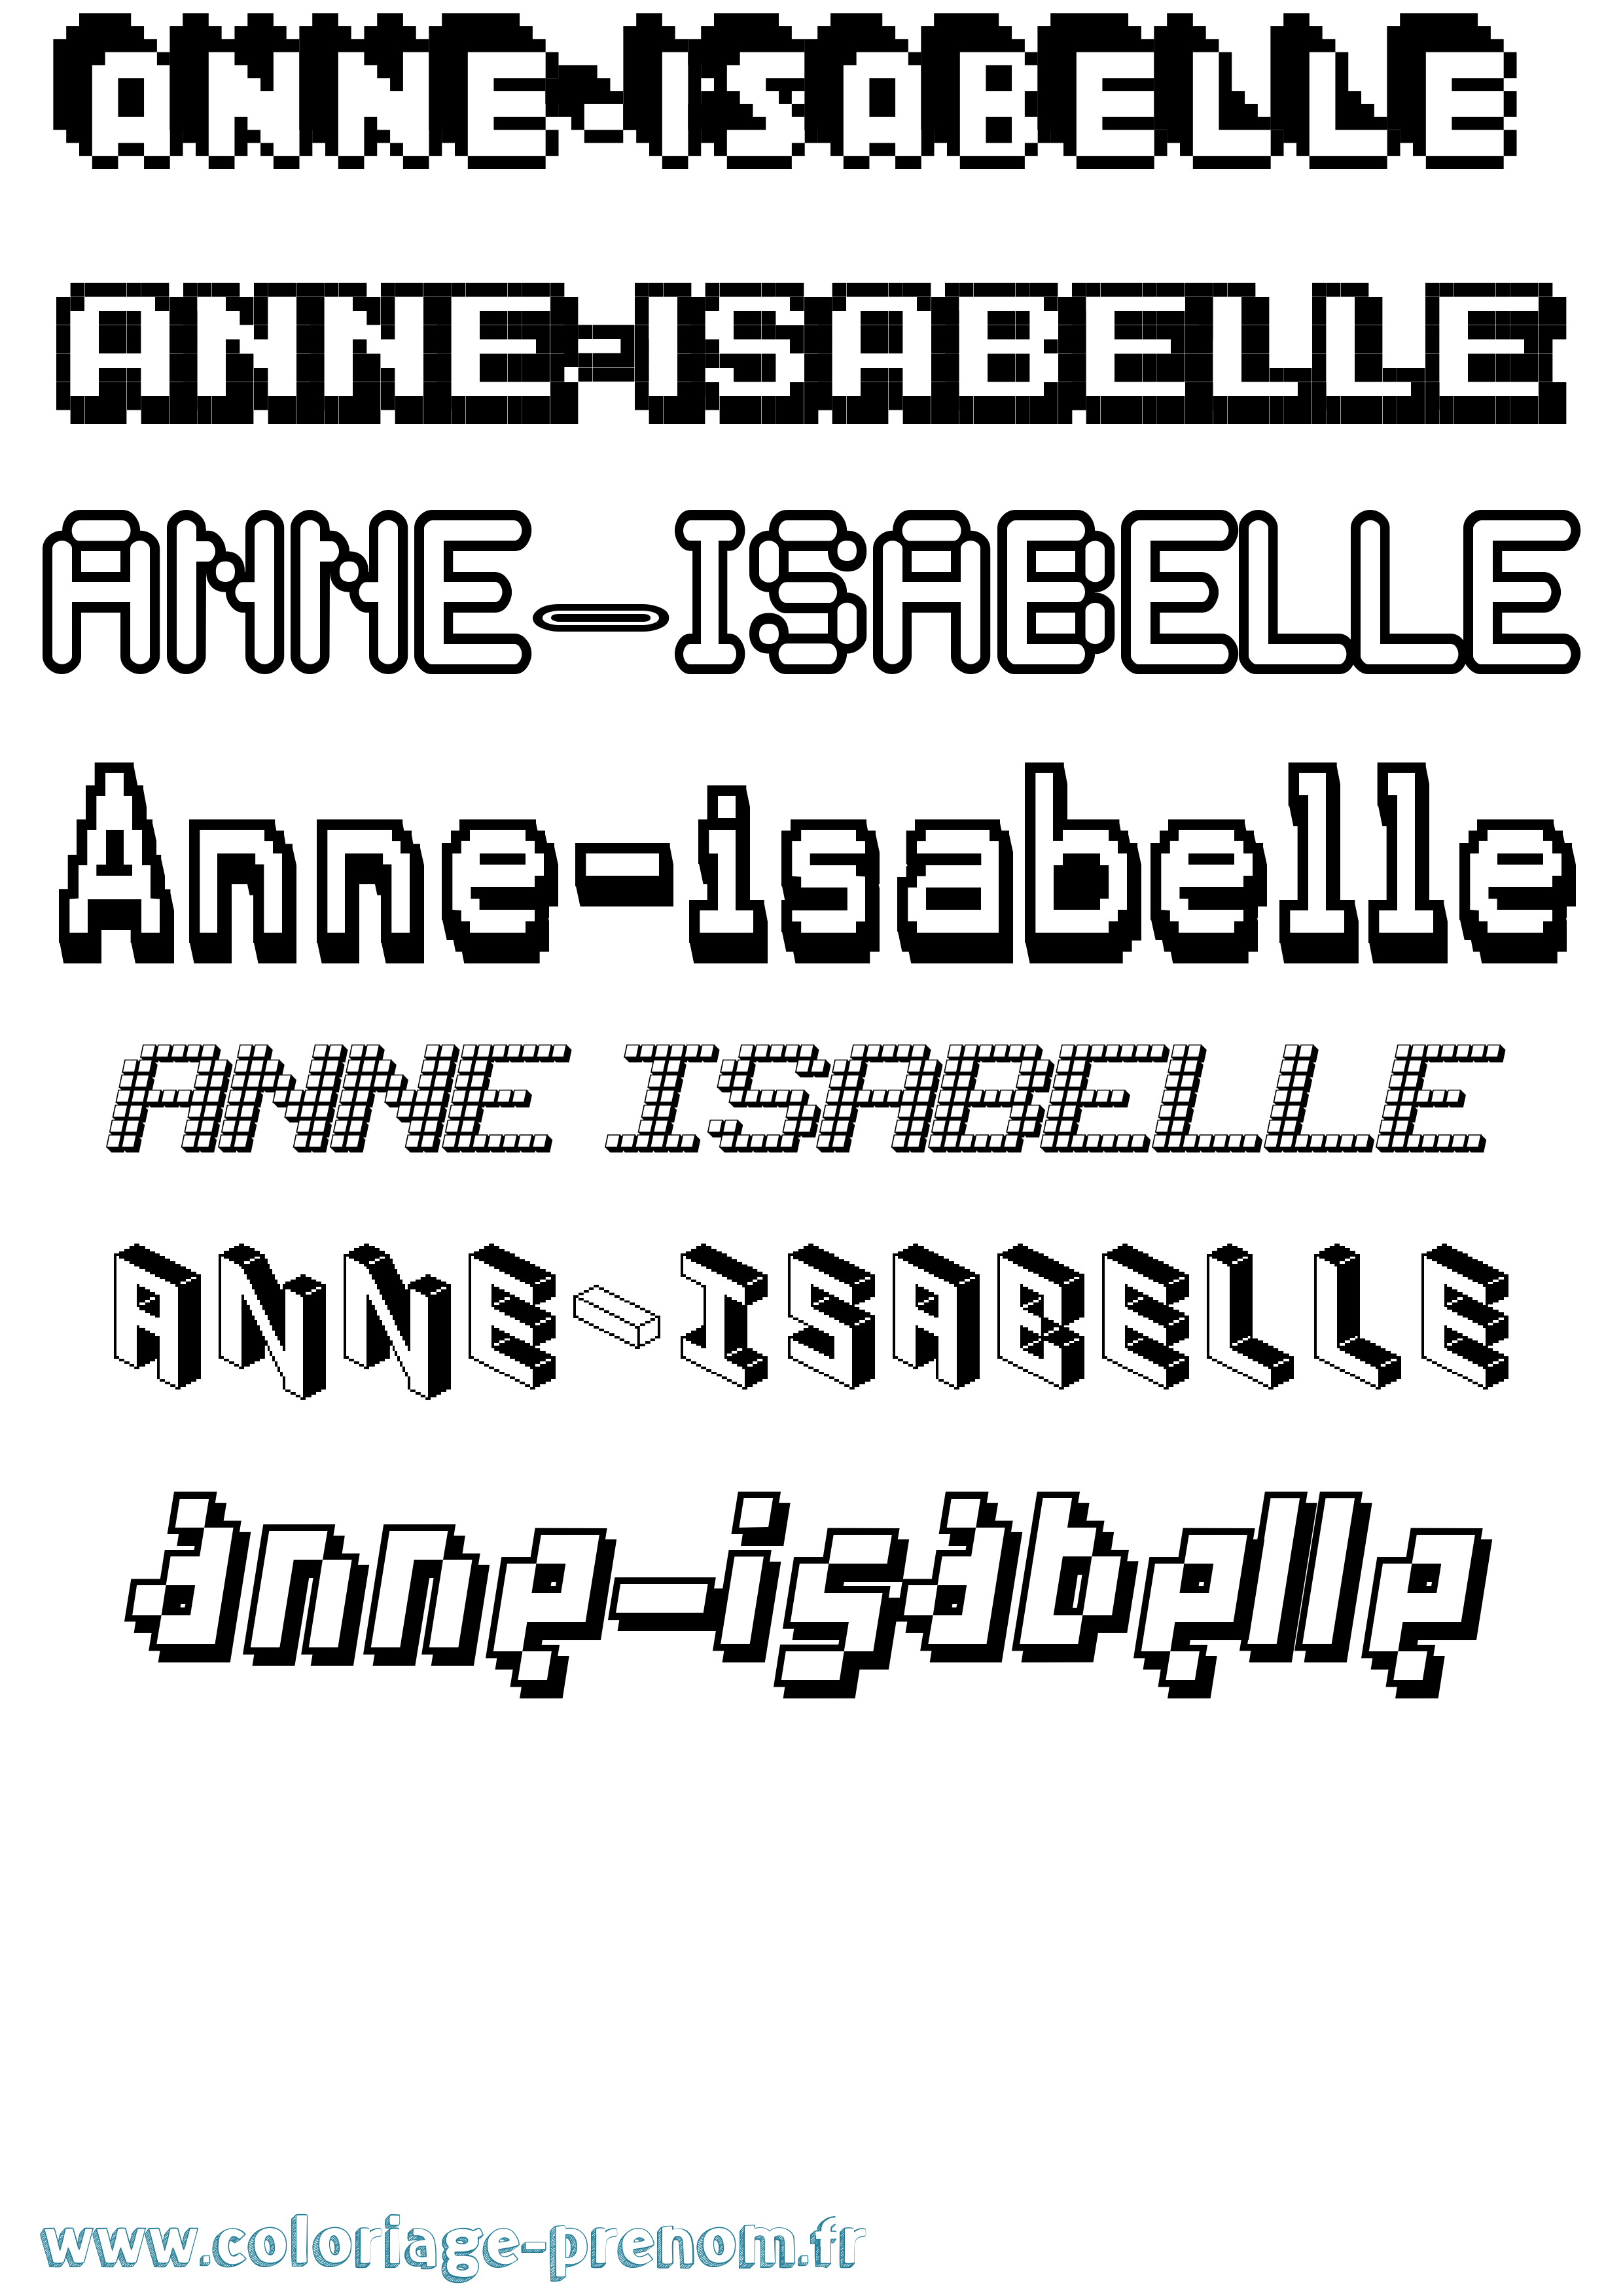 Coloriage prénom Anne-Isabelle Pixel